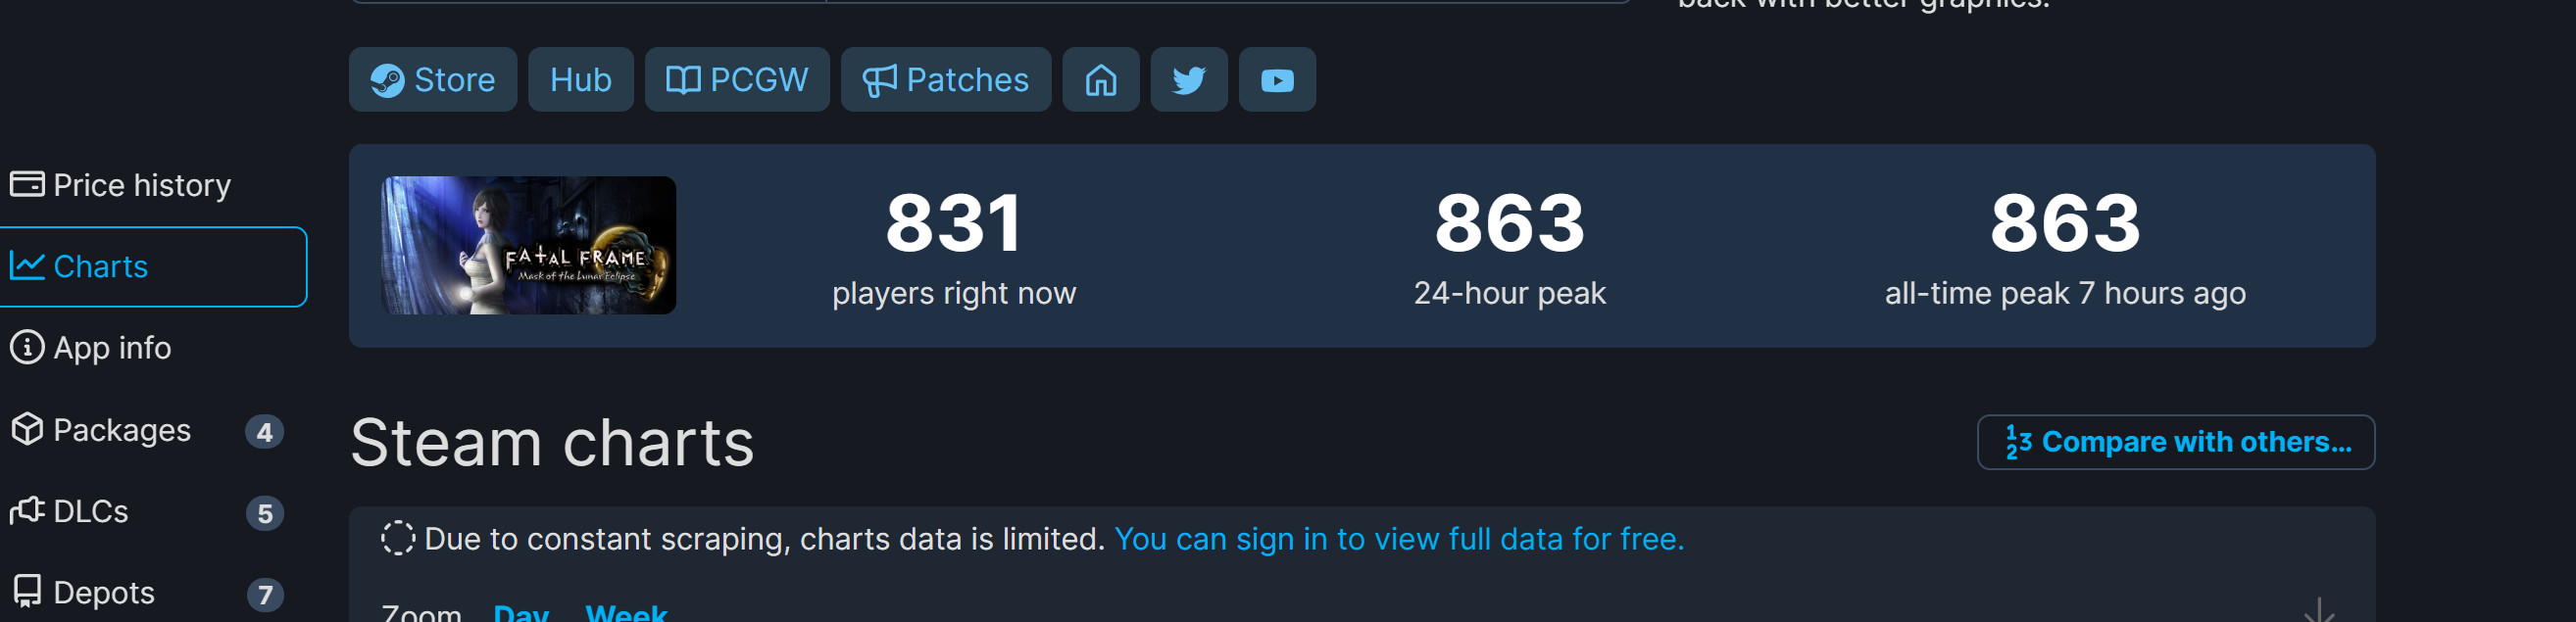 《零：月蚀的假面》Steam特别好评 峰值863人